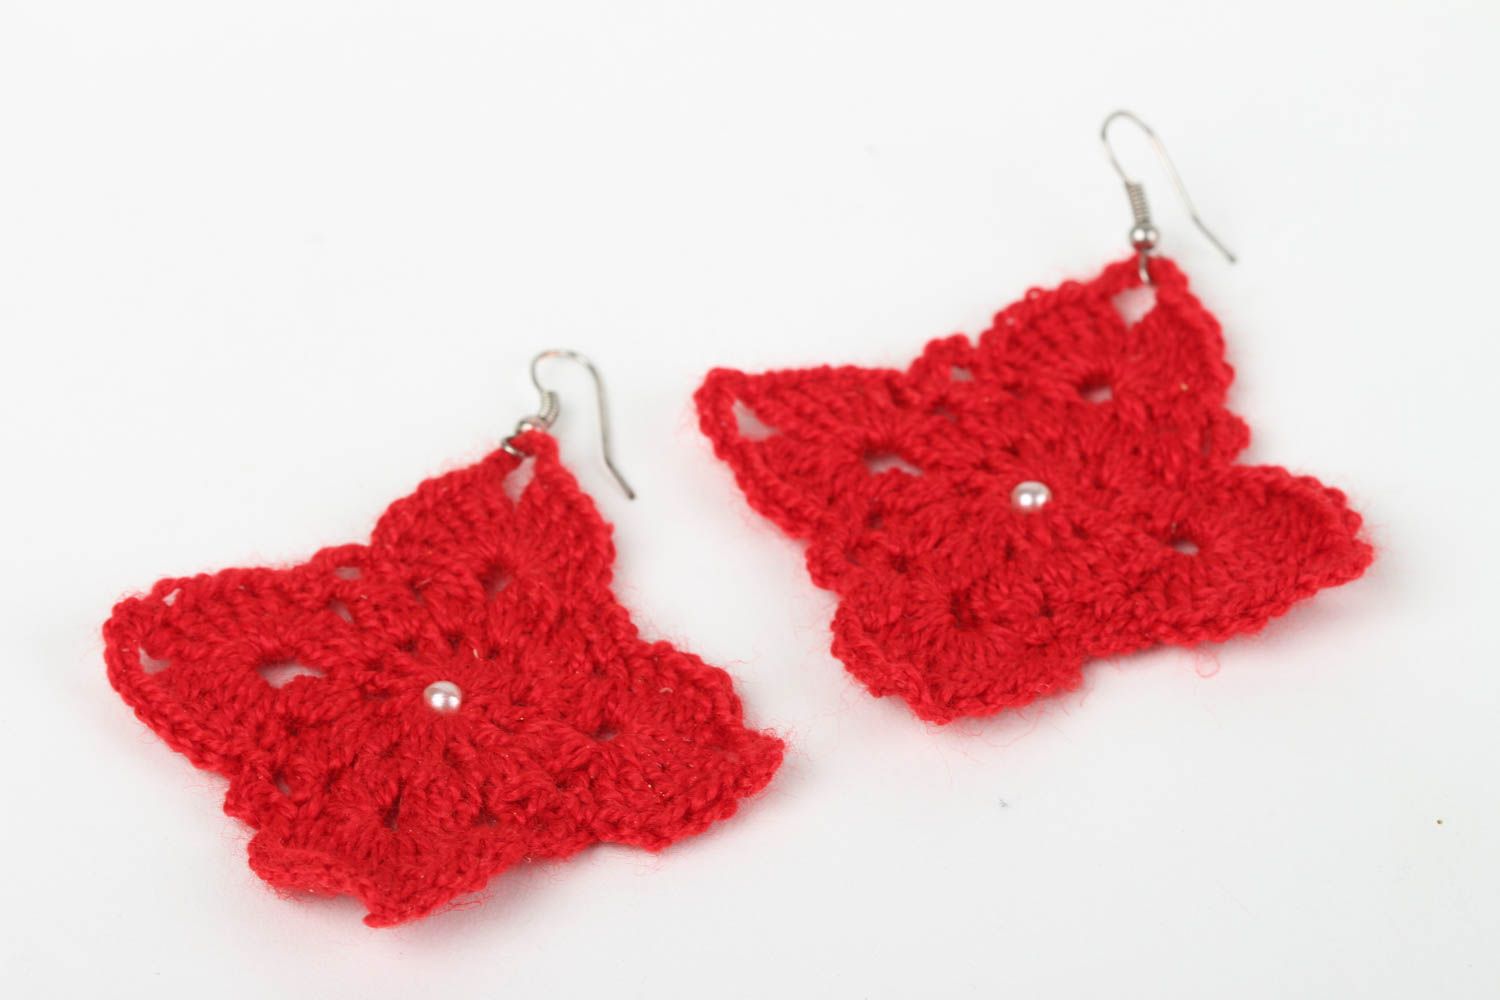 Handmade crochet earrings flower earrings costume jewelry designs gift ideas photo 3